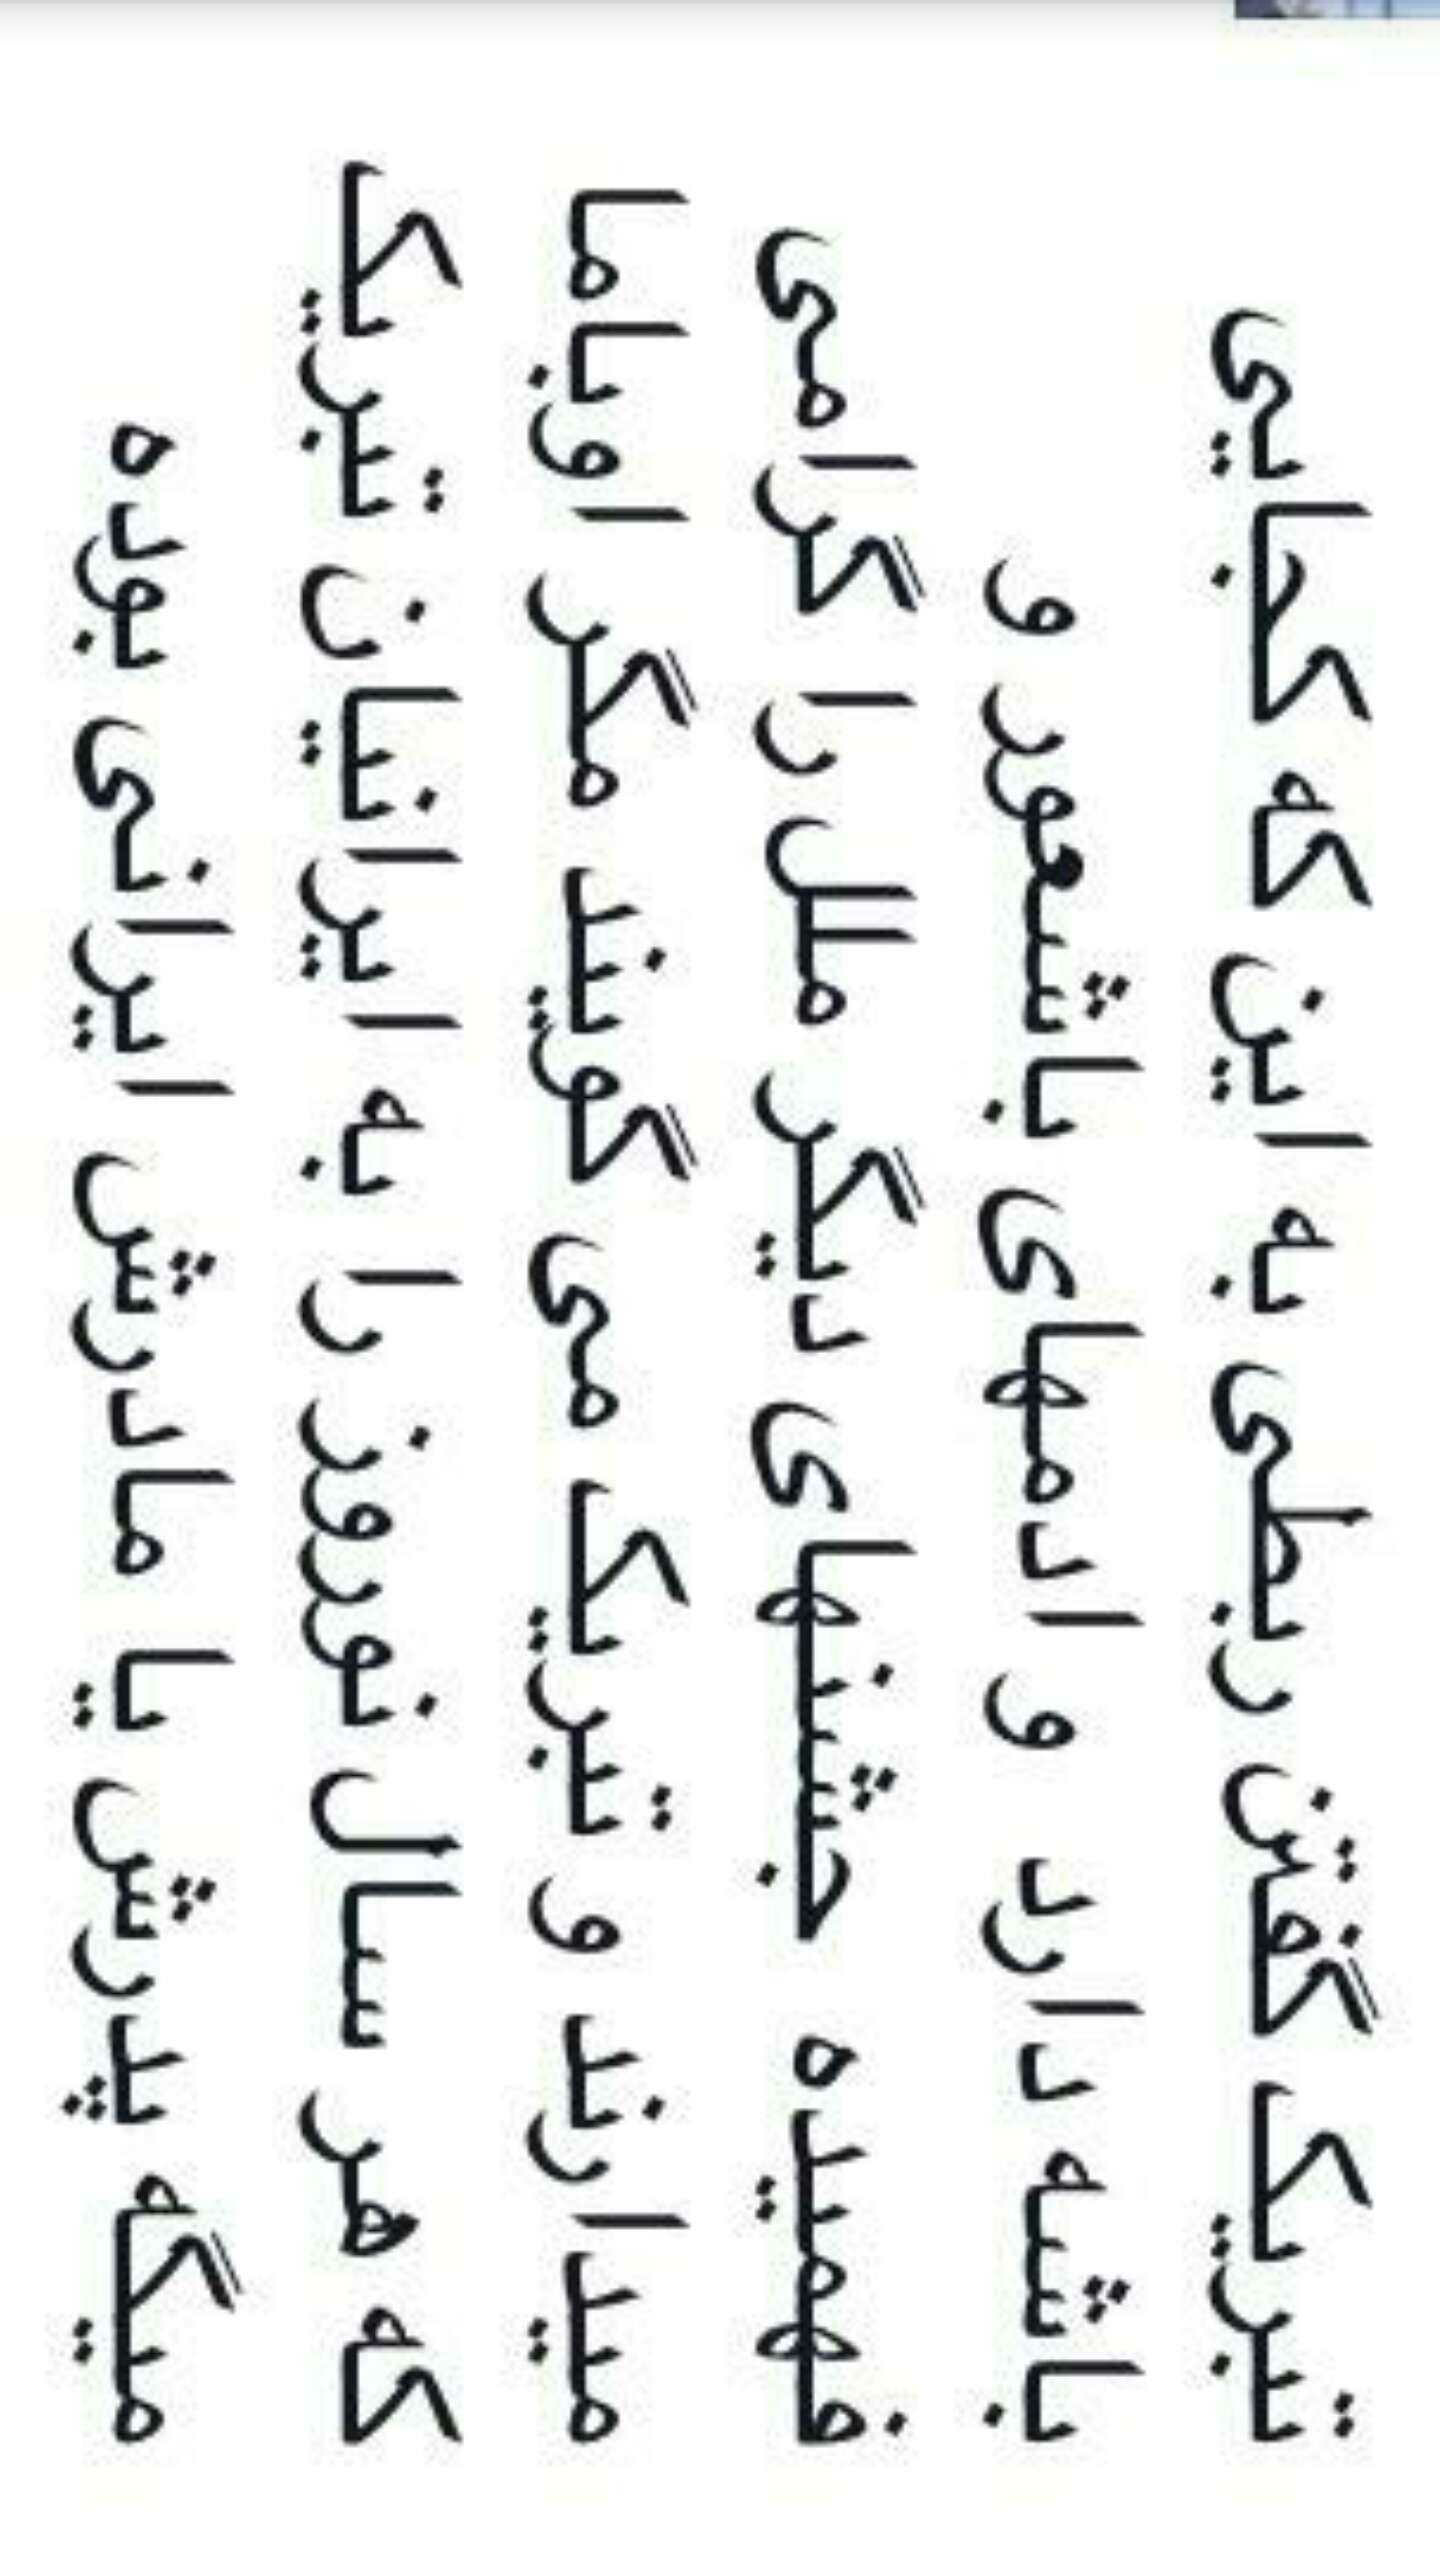 Arabic Text - Imgur